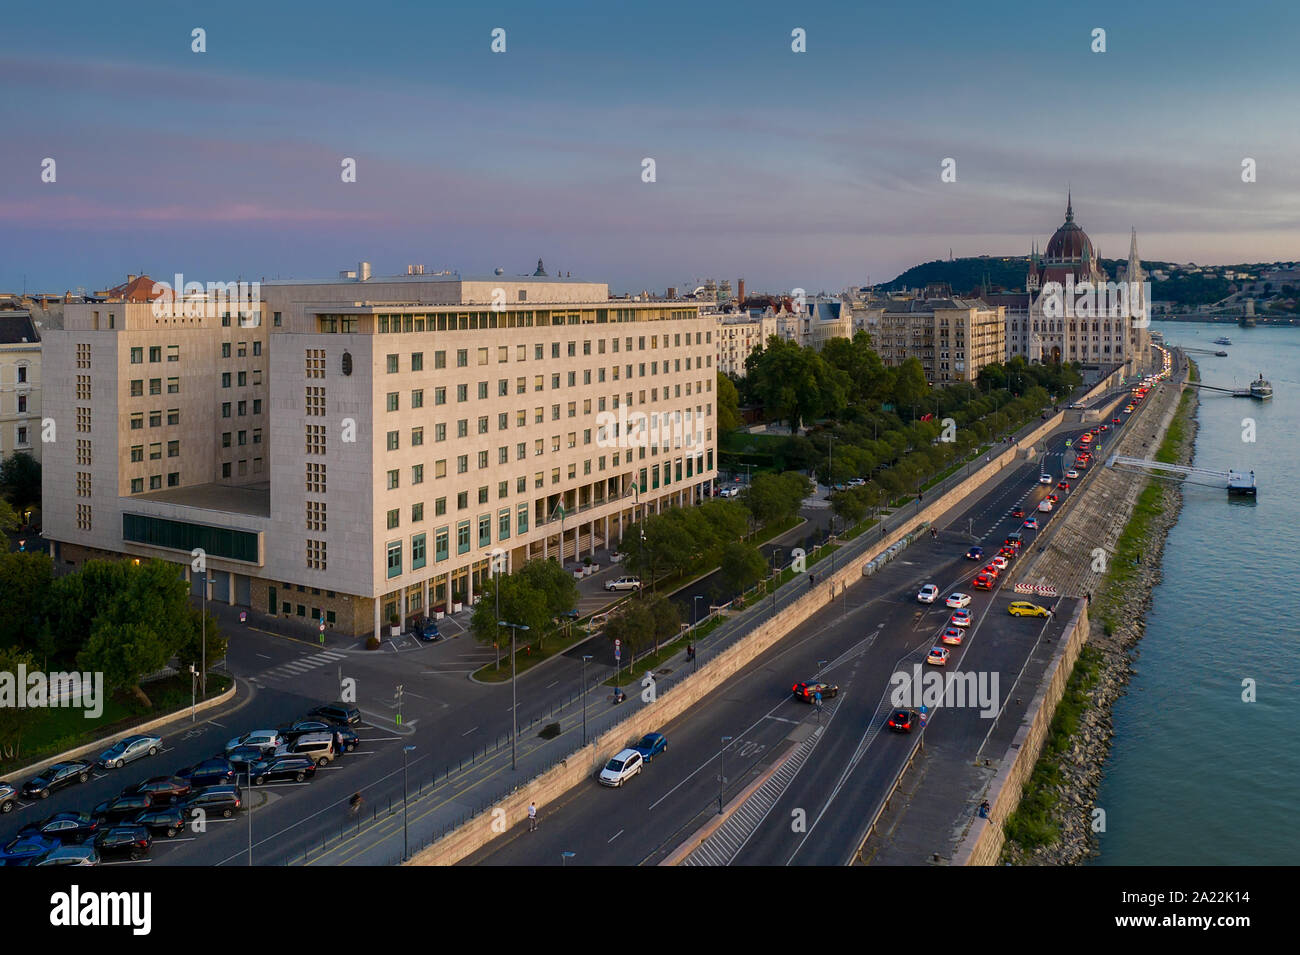 Ungarische parliamnet Bürogebäude. Parlamentarischen Büros. Europa, Ungarn, Budapest, Mari Jaszai Square. Stockfoto